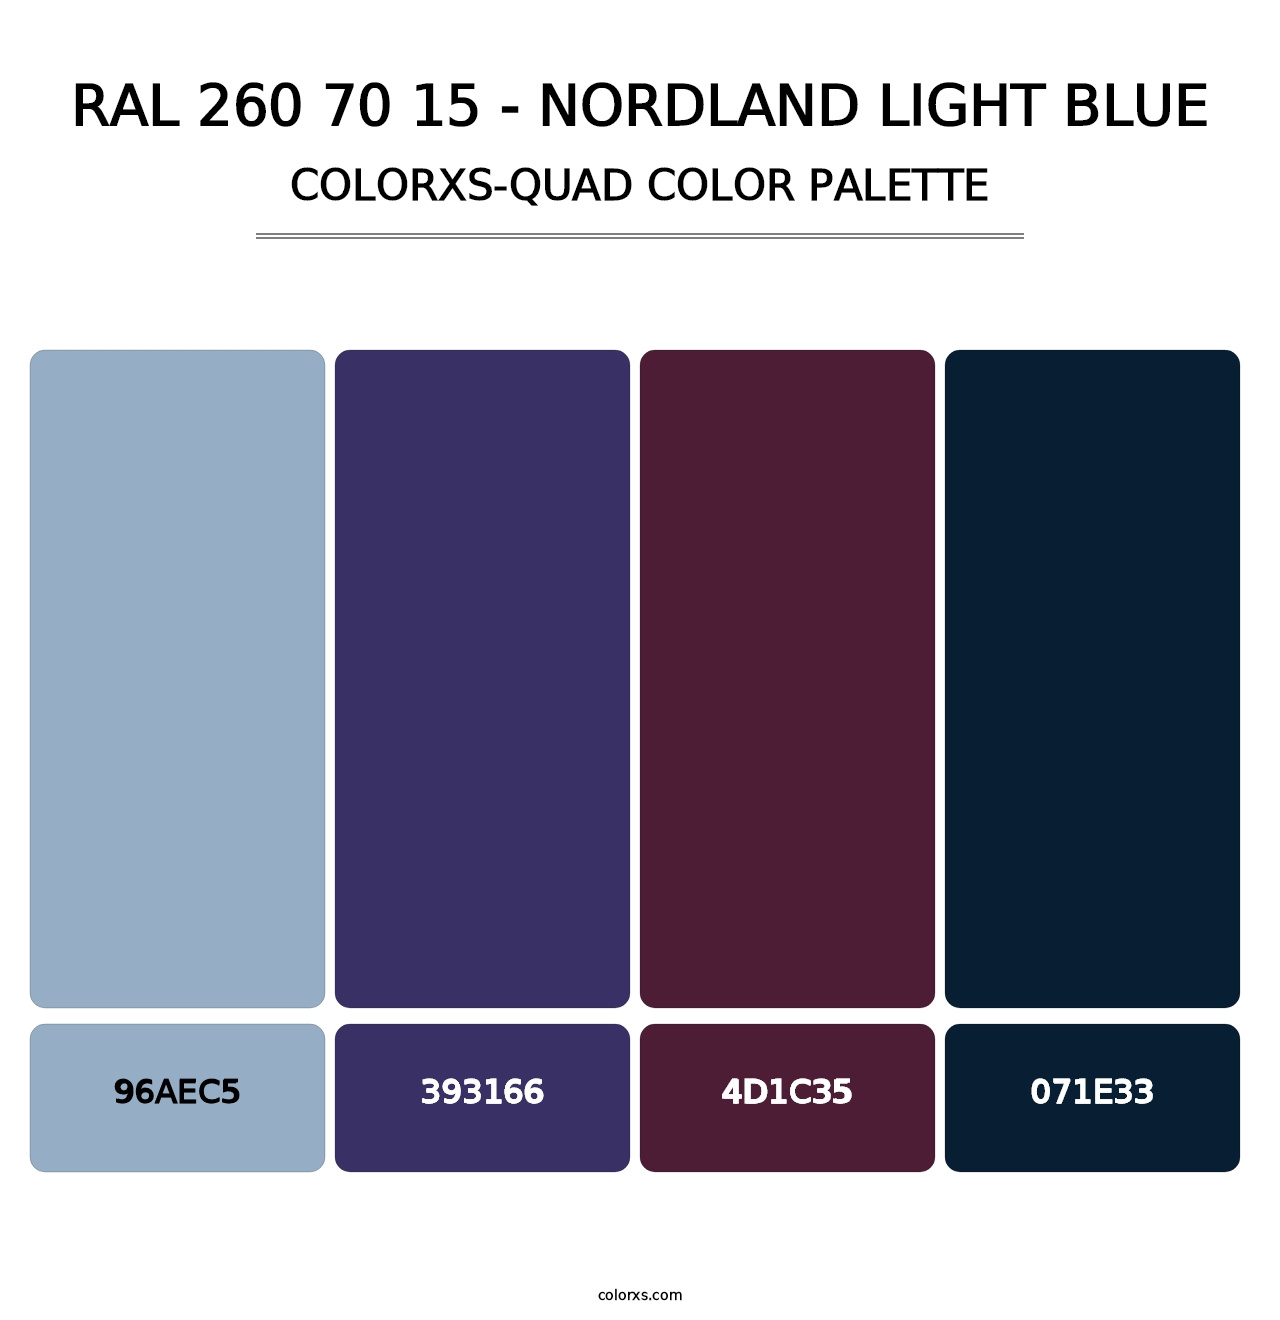 RAL 260 70 15 - Nordland Light Blue - Colorxs Quad Palette